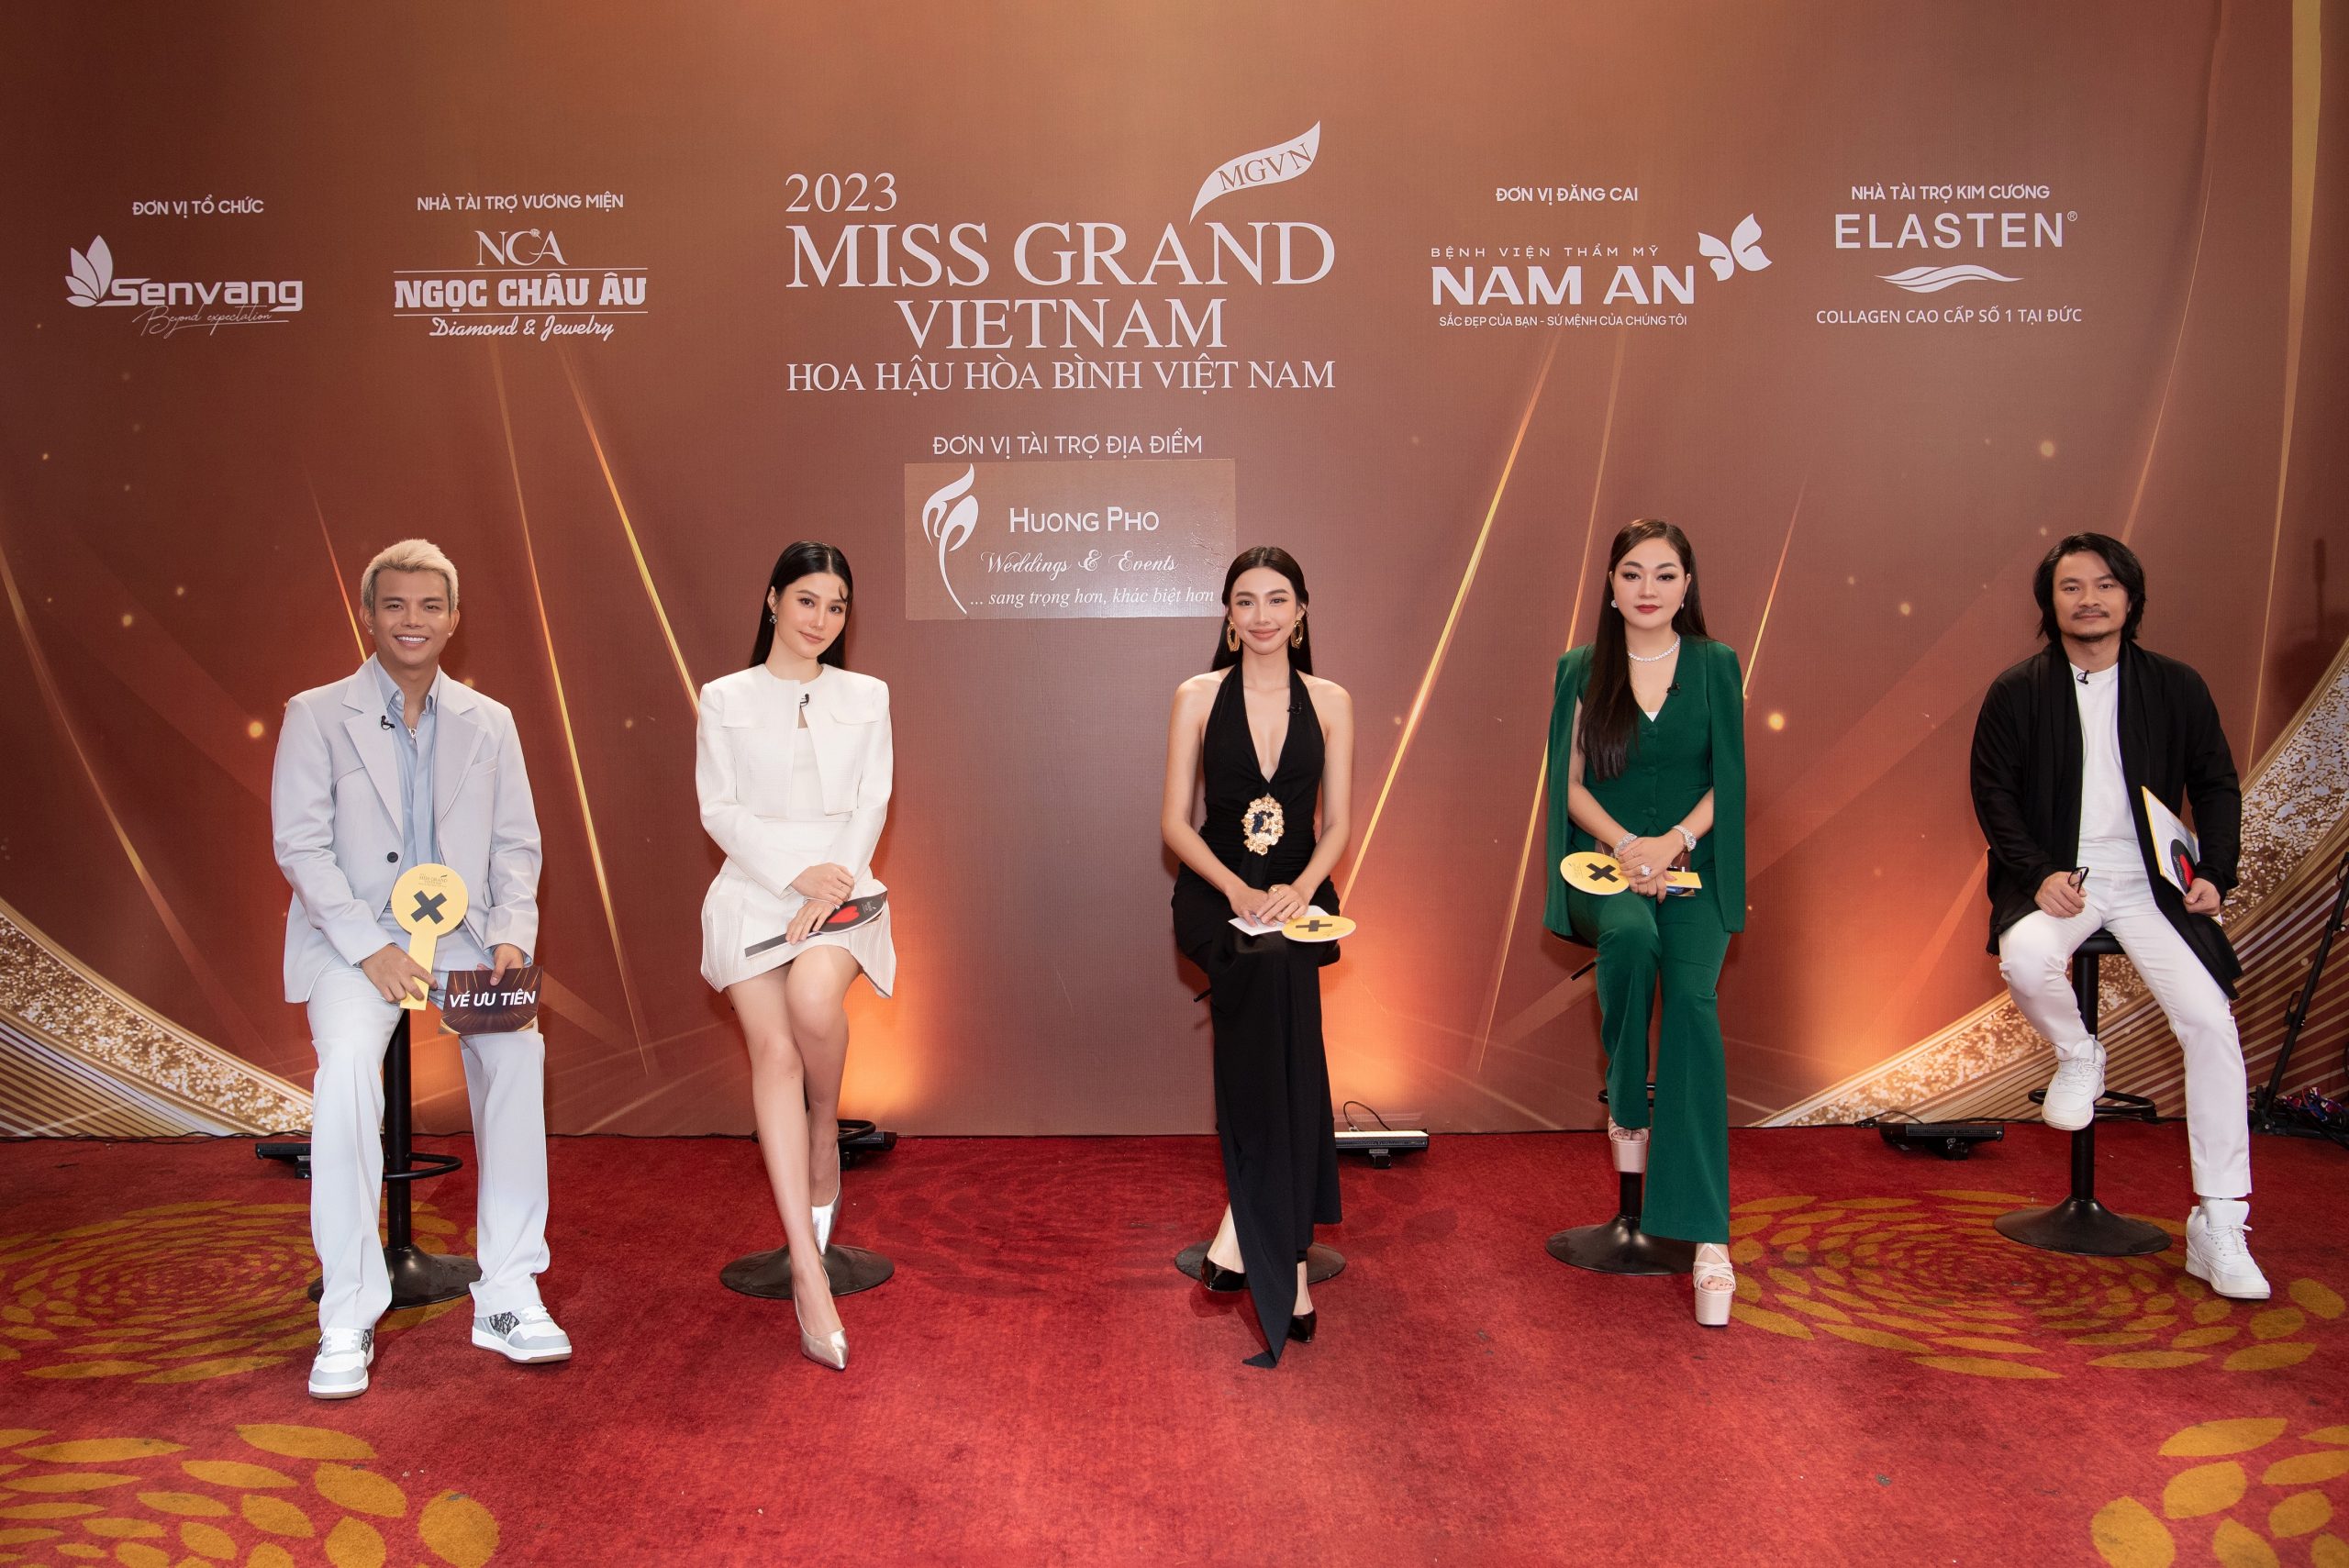 Hoa hậu Thùy Tiên, đạo diễn Hoàng Nhật Nam tranh cãi nảy lửa trong tập 1 cuộc thi Thiết kế vương miện Miss Grand Vietnam 2023￼